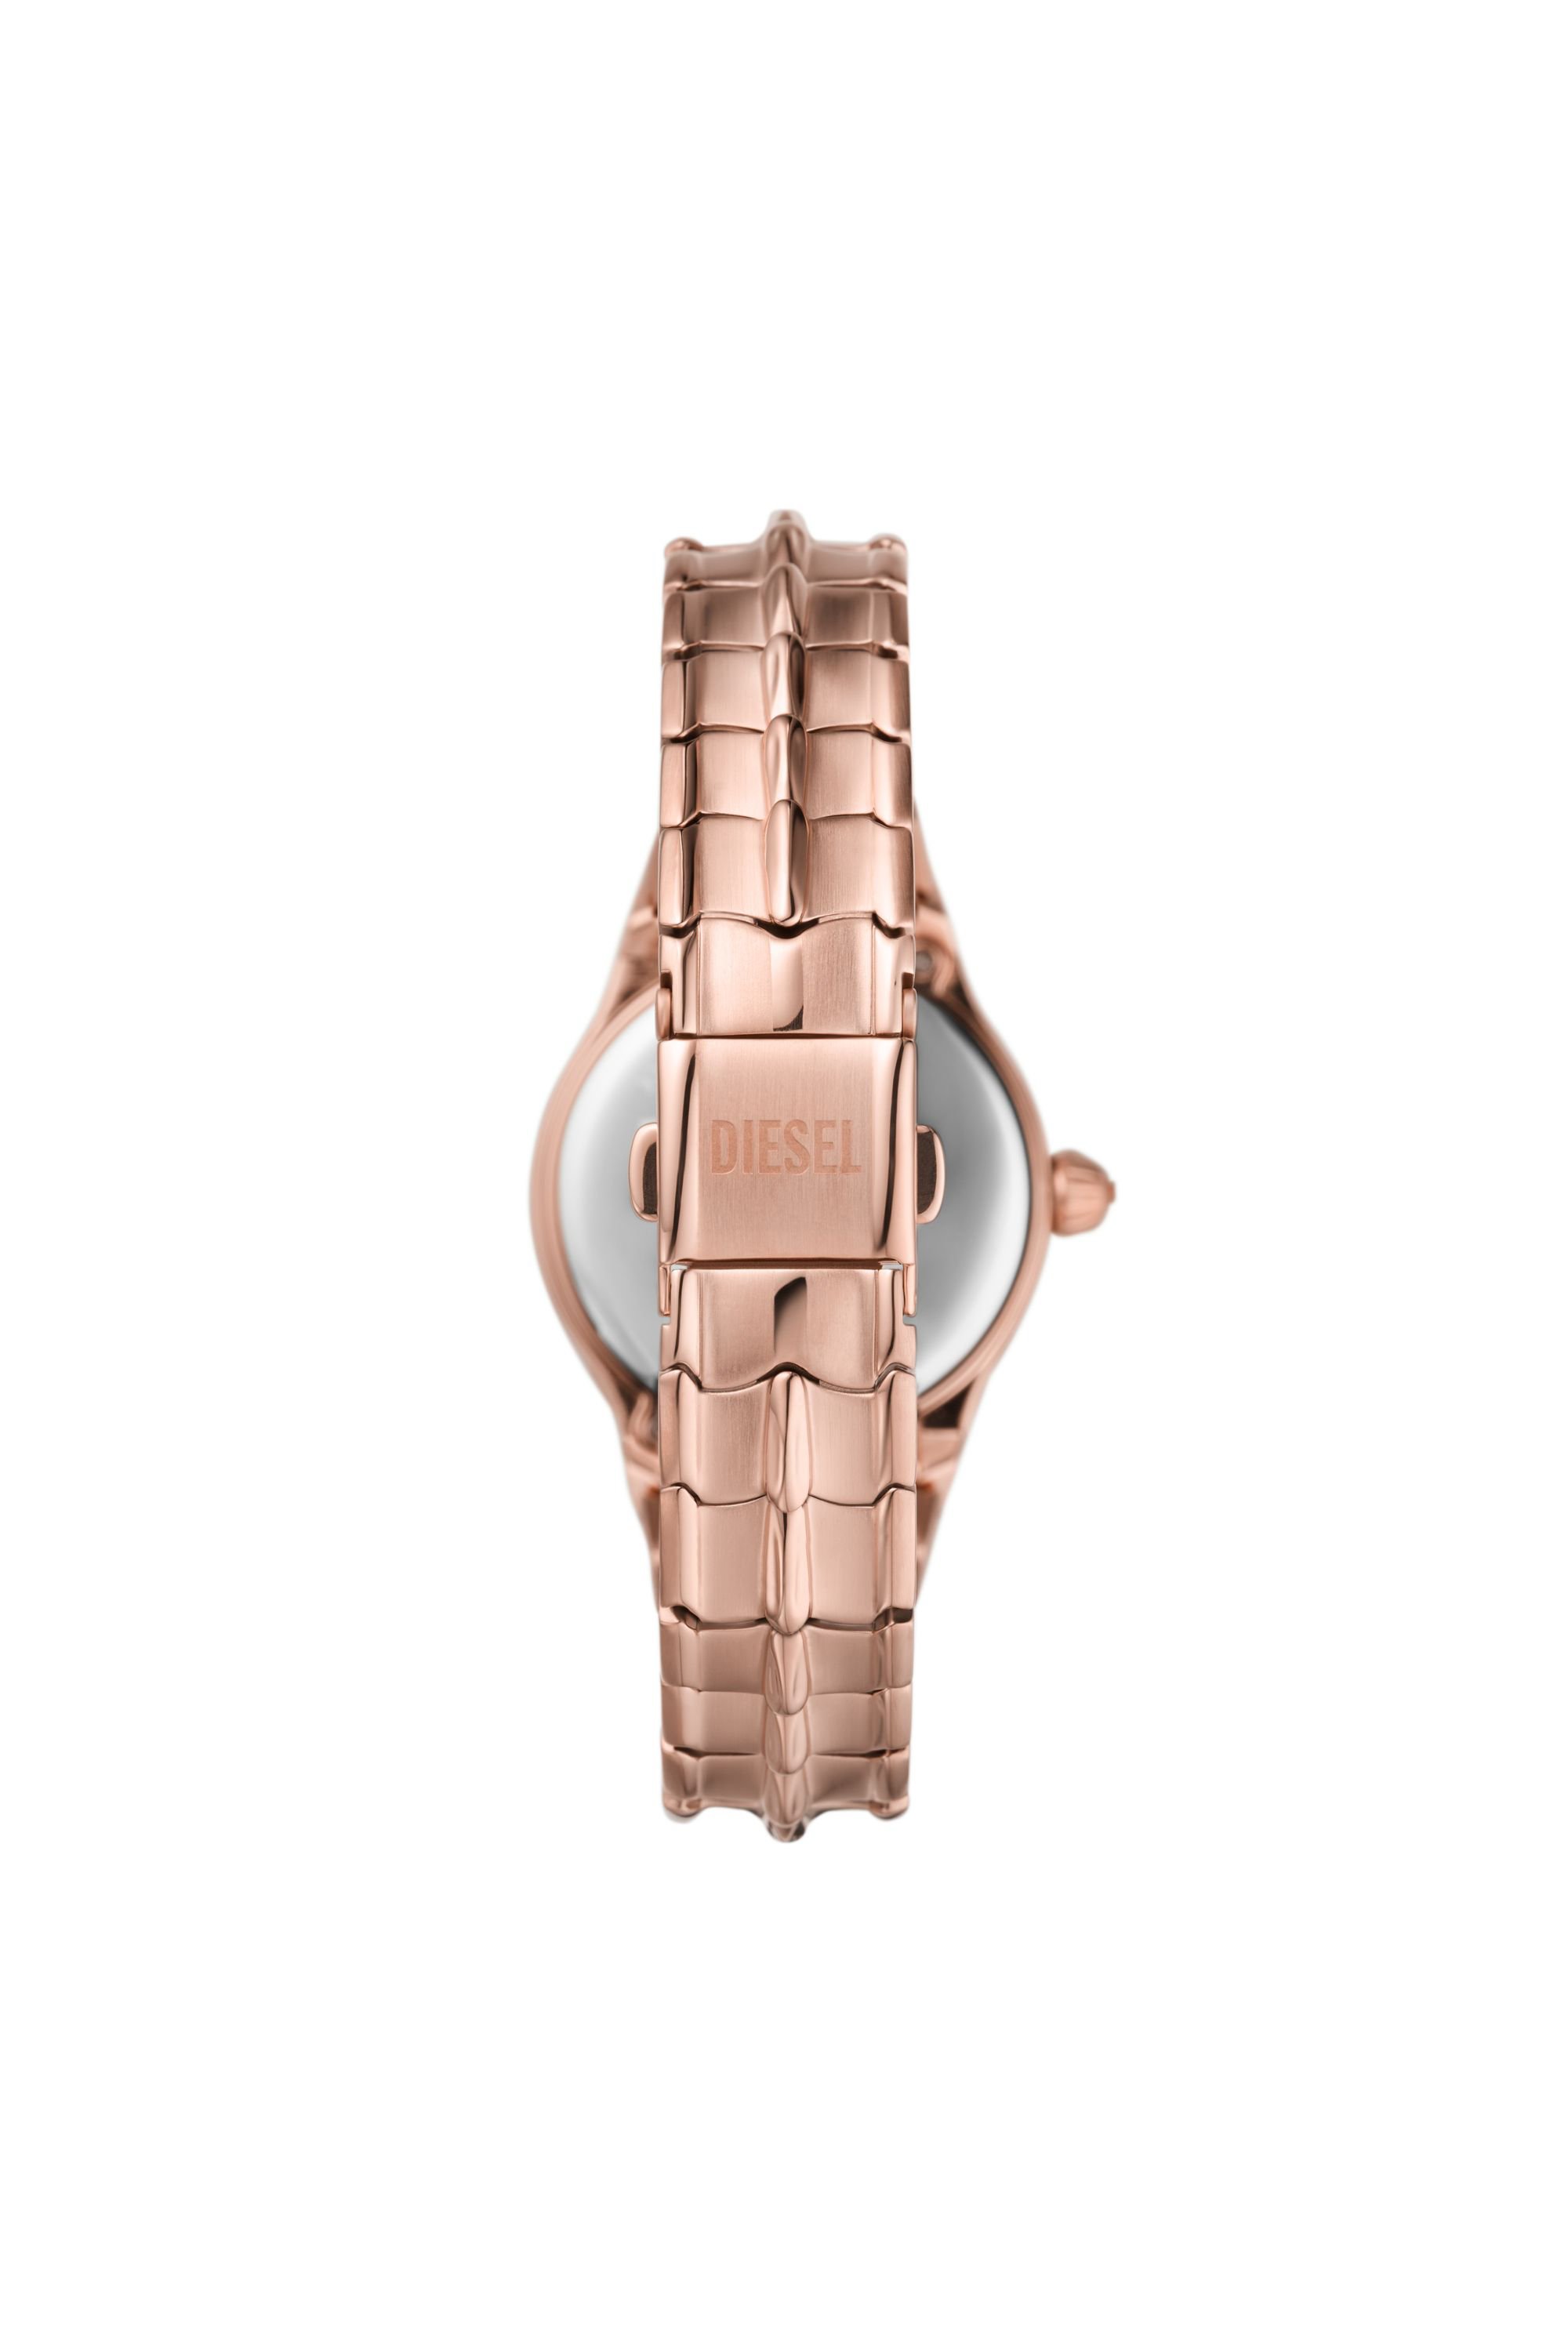 Diesel - DZ5604, Damen Vert Armbanduhr aus roségoldenem Edelstahl mit drei Zeigern in Rosa - Image 2